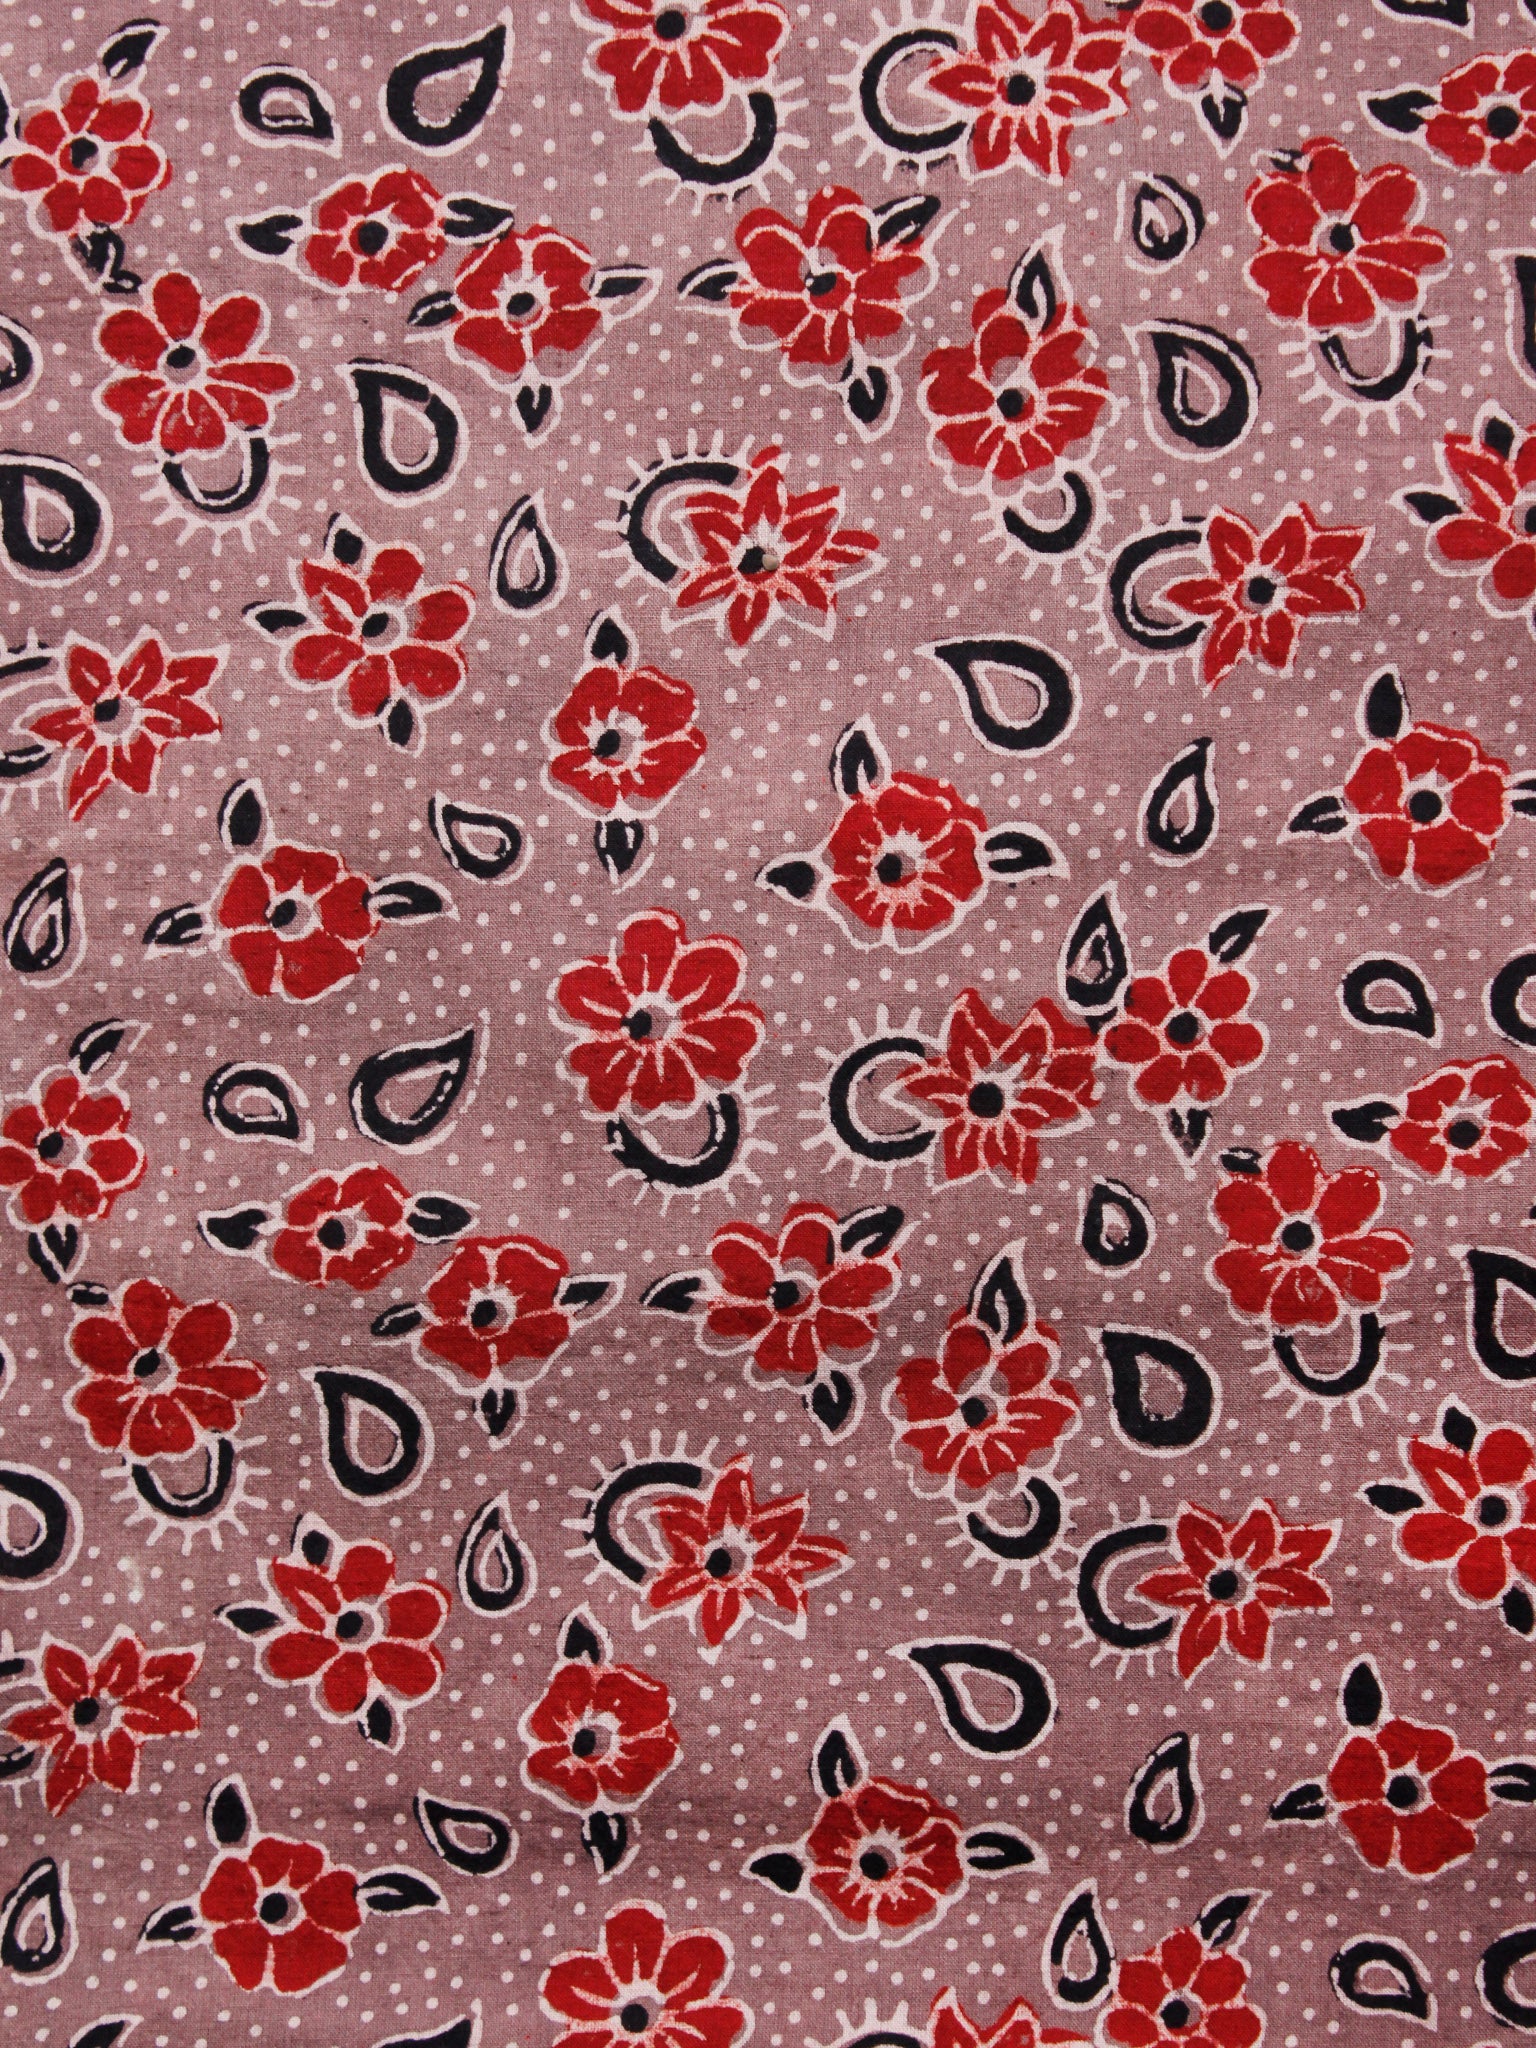 Hand Block Printed Cotton Cambric Fabric Pieces – InduBindu